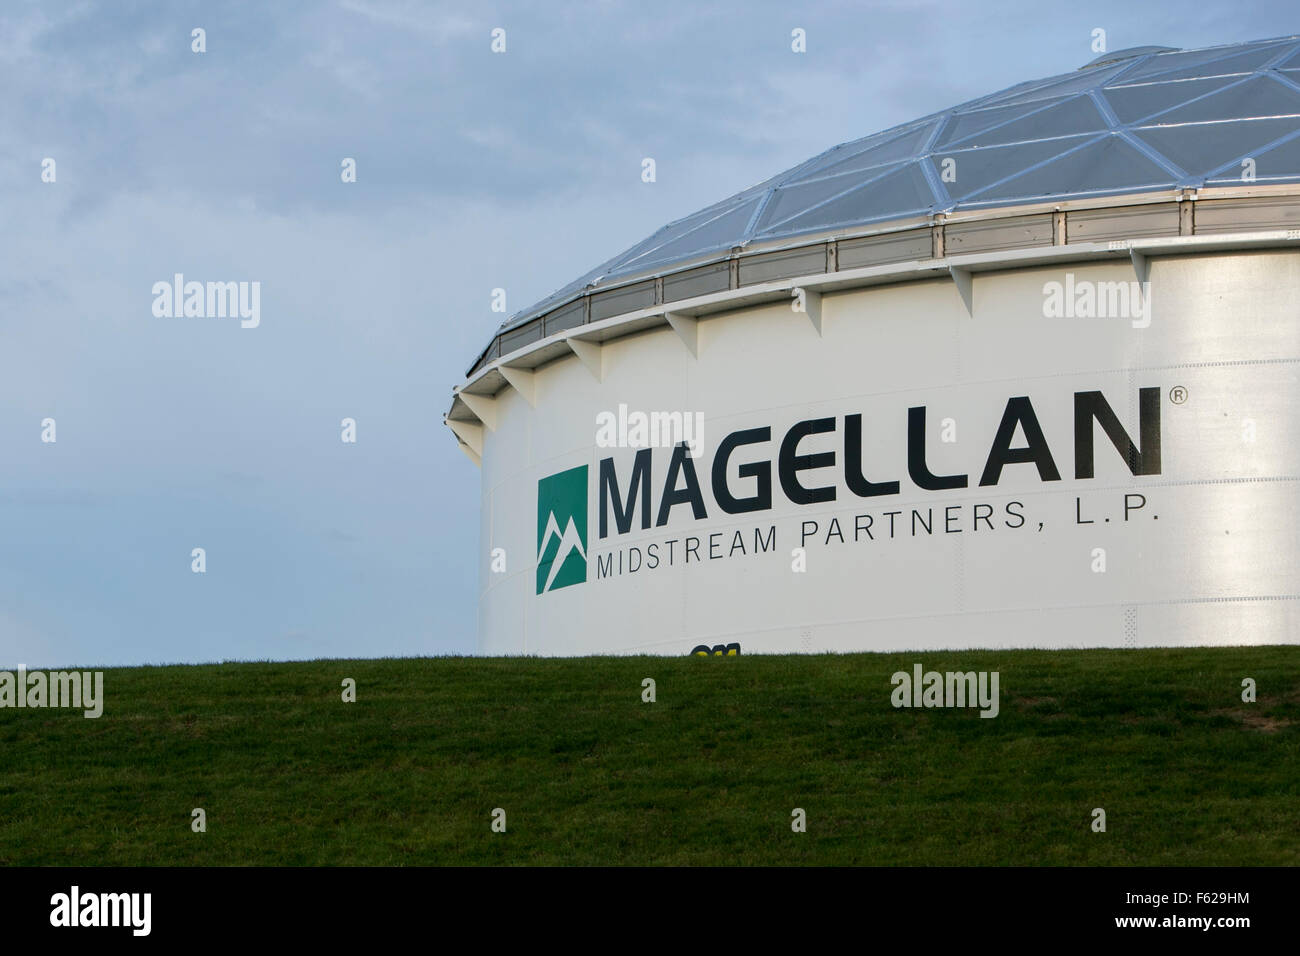 Un logo affiche à l'extérieur d'une installation de traitement, Magellan occupés Partners, L.P., à Saint Paul, Minnesota le 25 octobre 2015. Banque D'Images